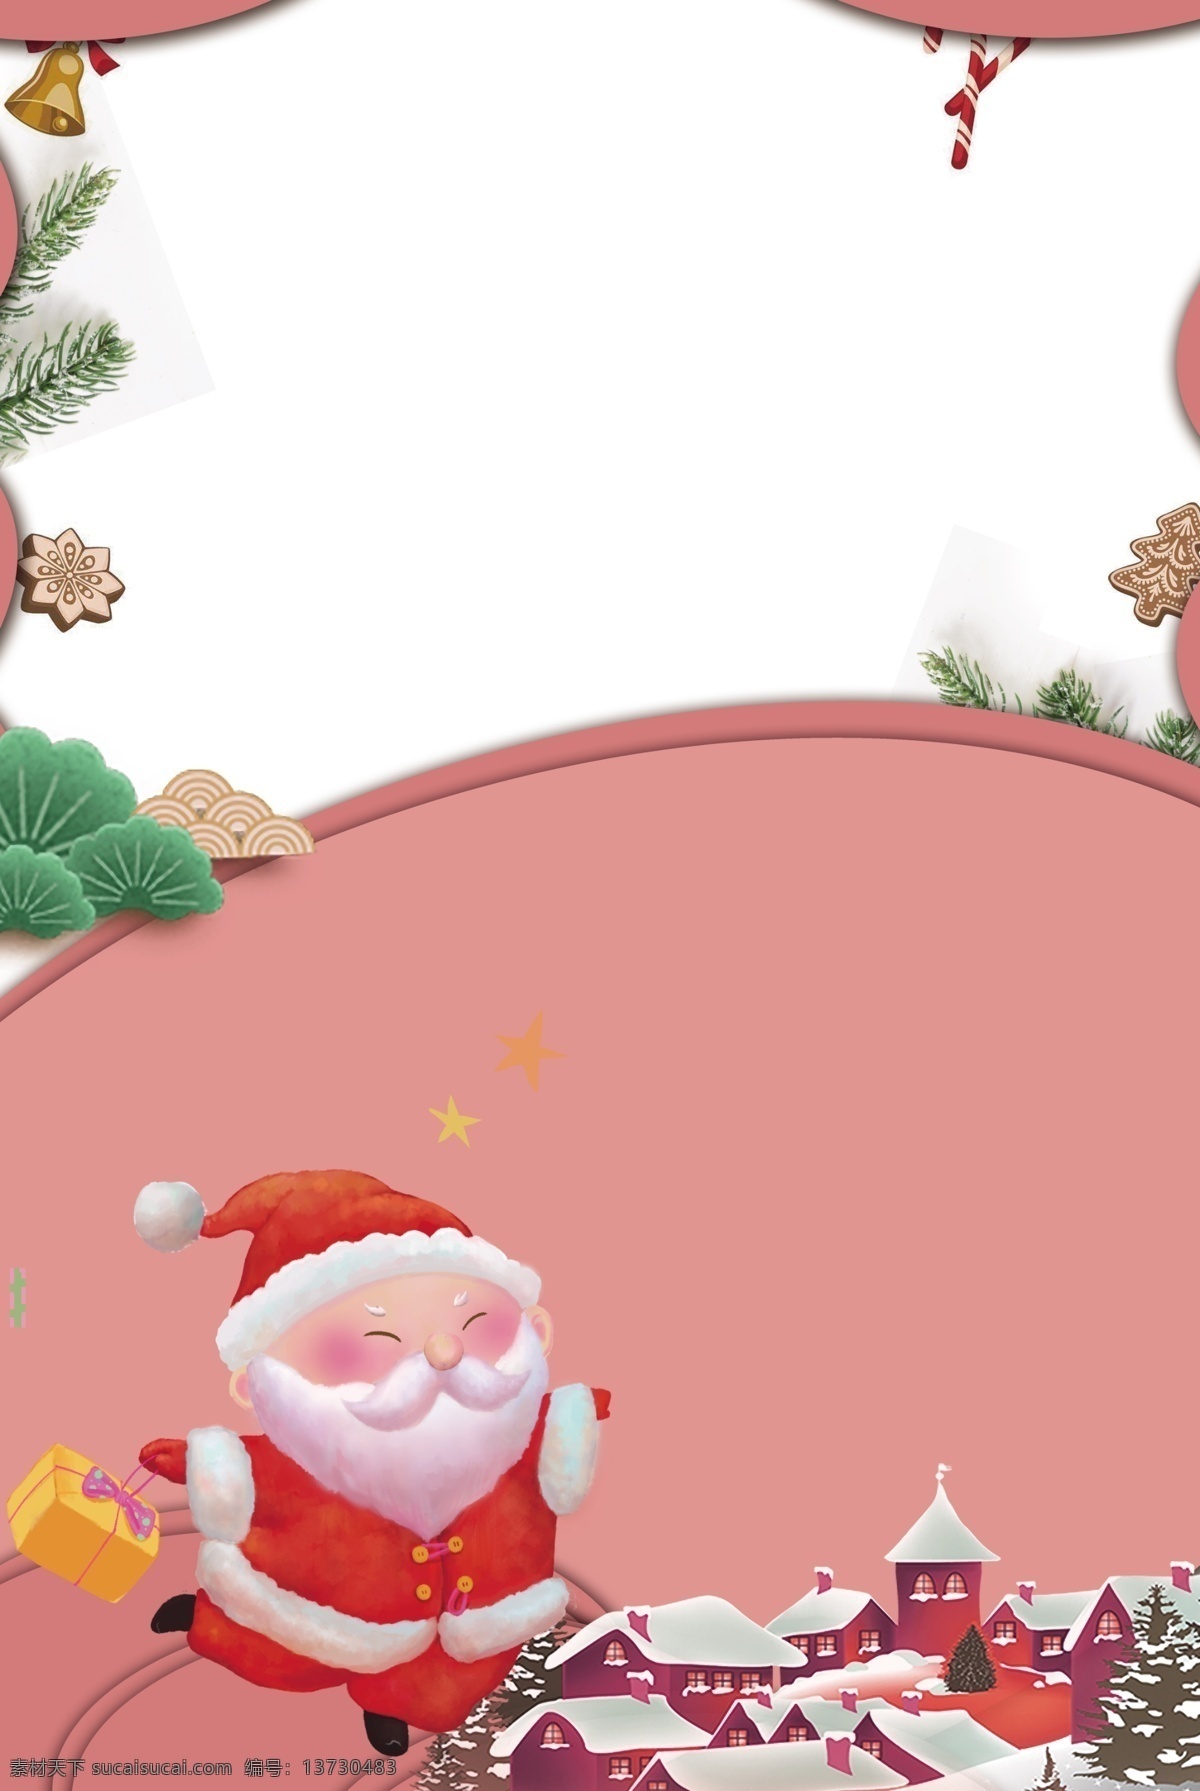 礼品盒 圣诞老人 西方 节日 圣诞节 广告 背景 图 雪花 红色 冬季 铃铛 圣诞树 派对 活动 麋鹿 广告背景